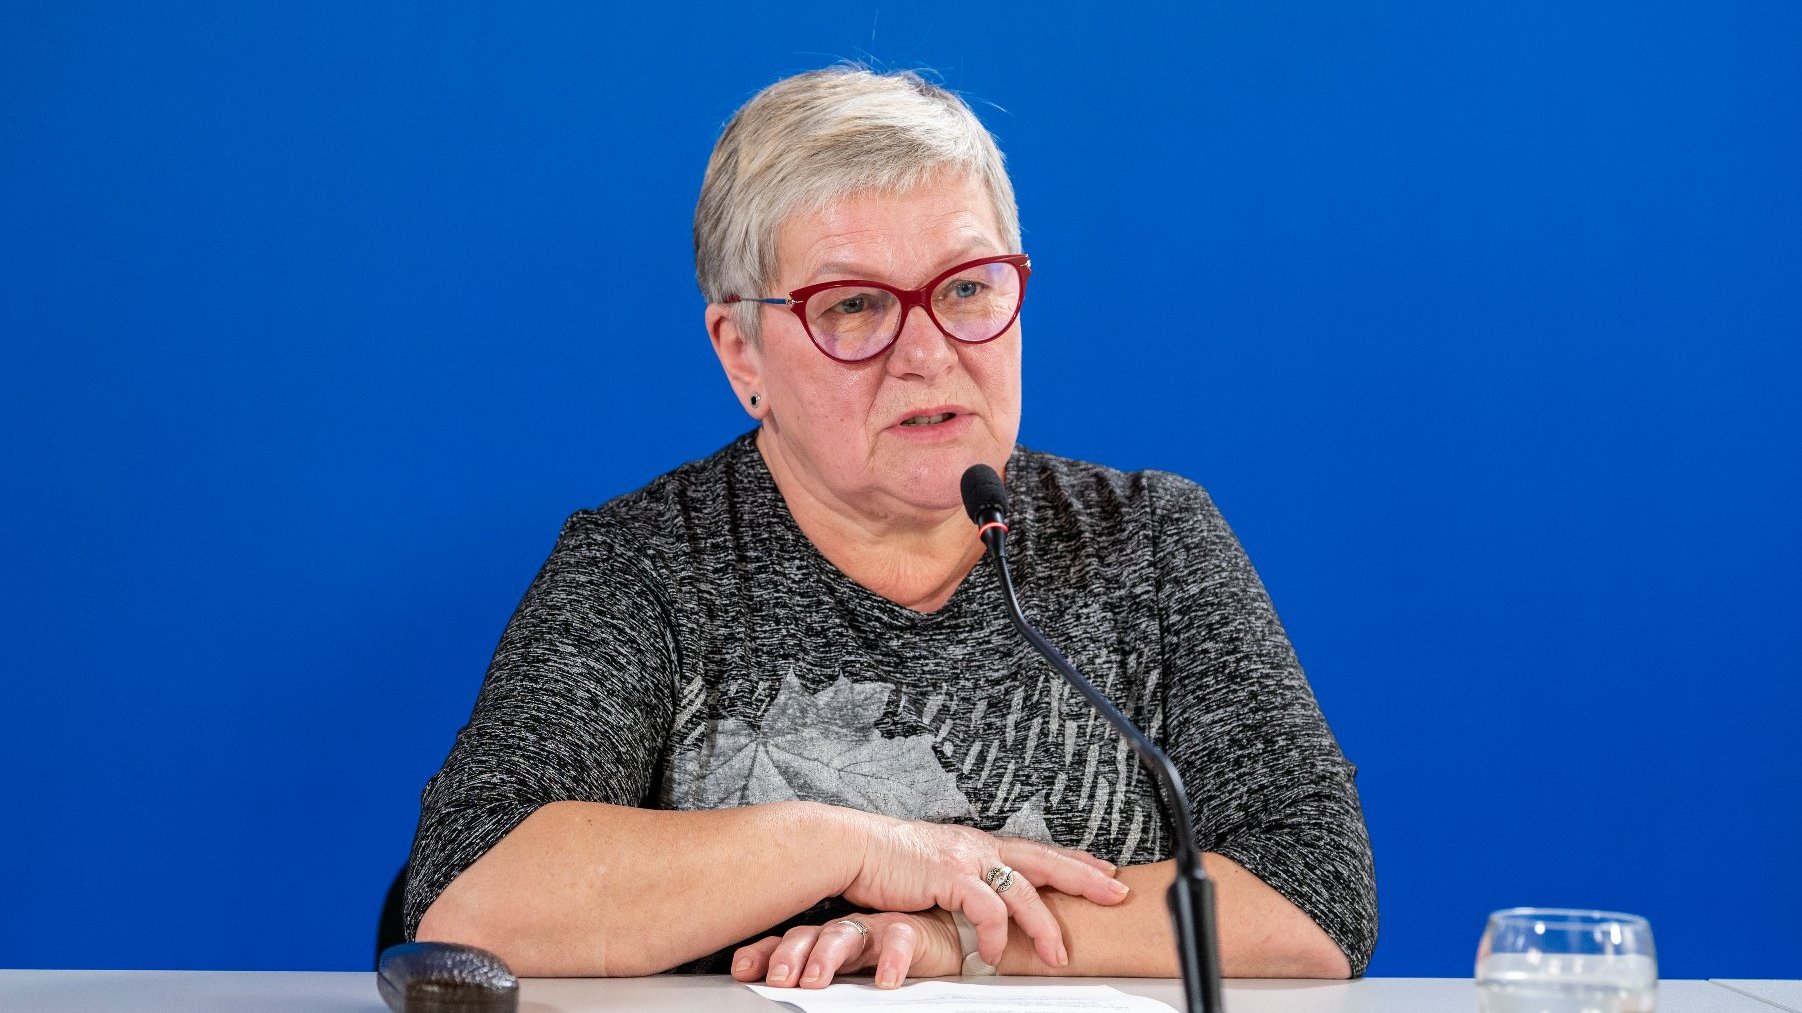 Na zdjeciu kobieta w okularach siedząca za stołem konferencyjnym, mówiąca coś do mikrofonu